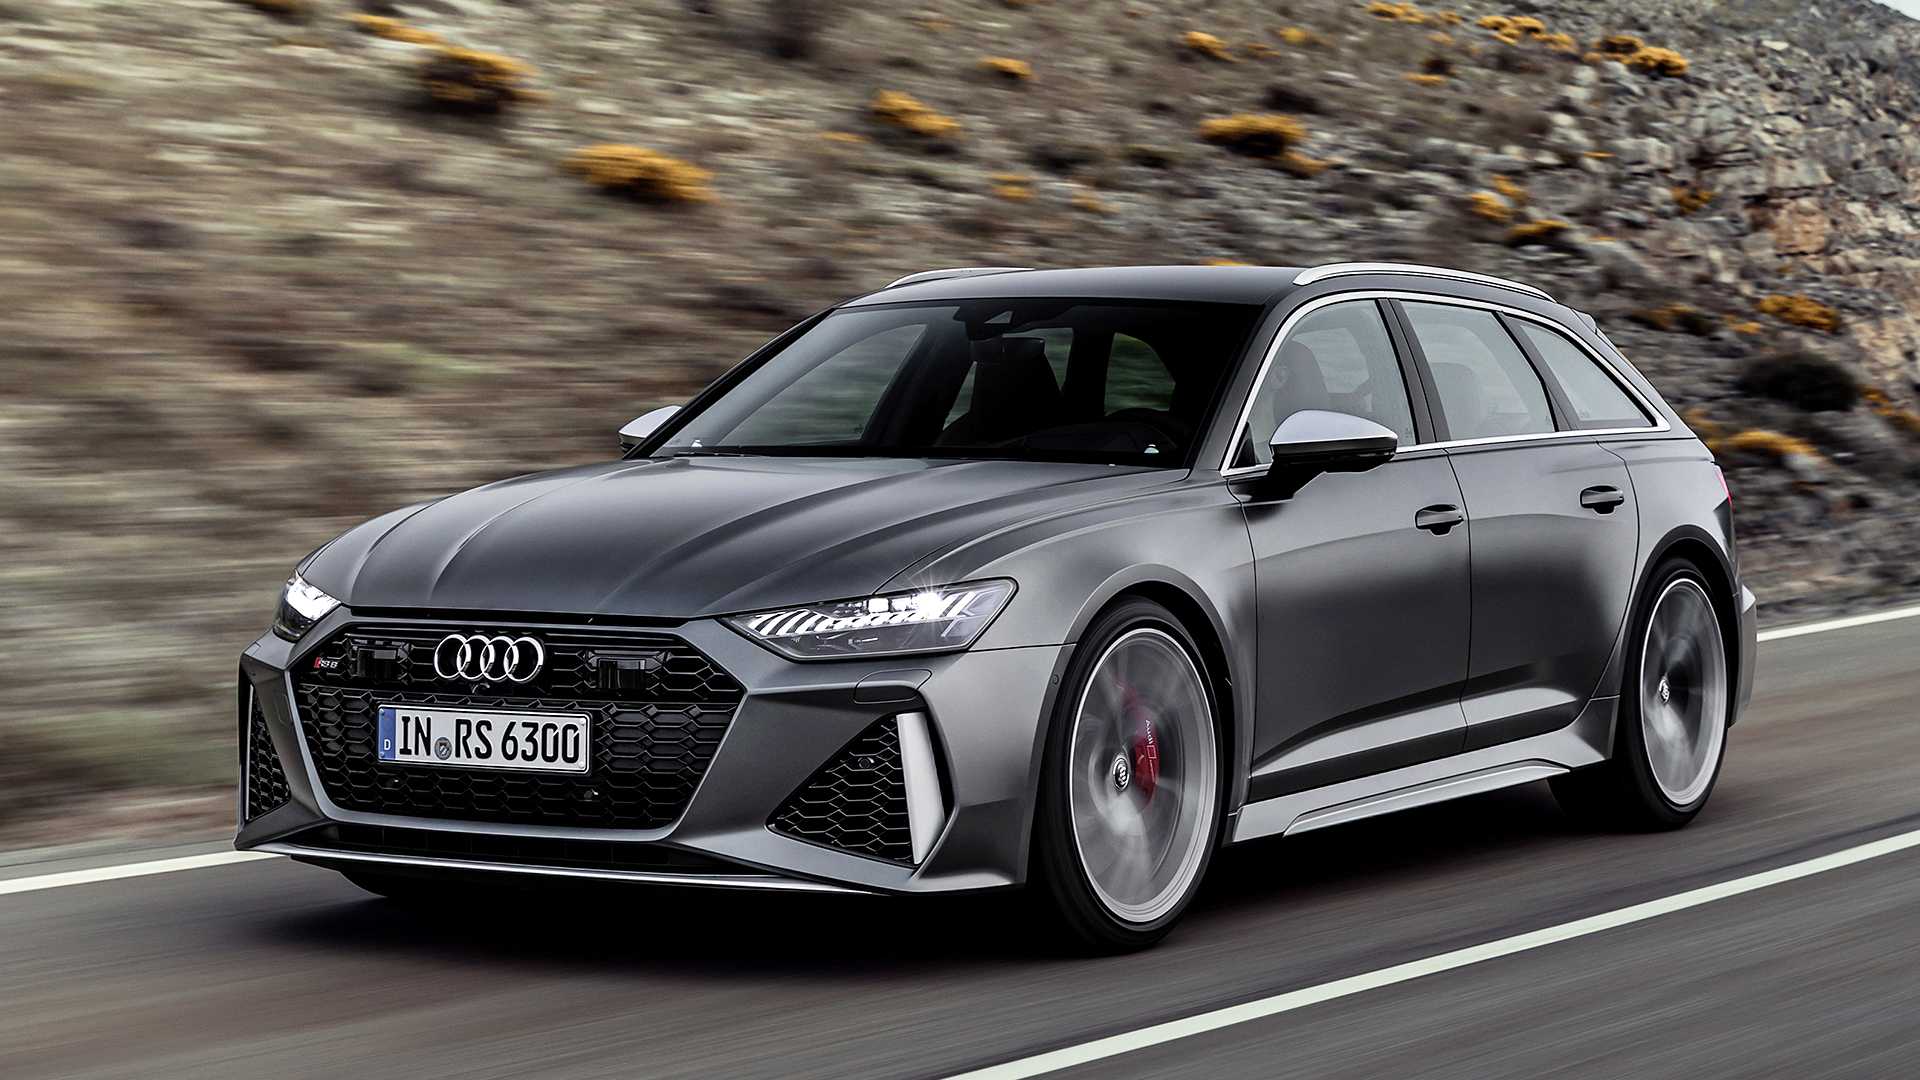 Audi q3 – слабые места поломки, оценка ресурса, выбор бу авто